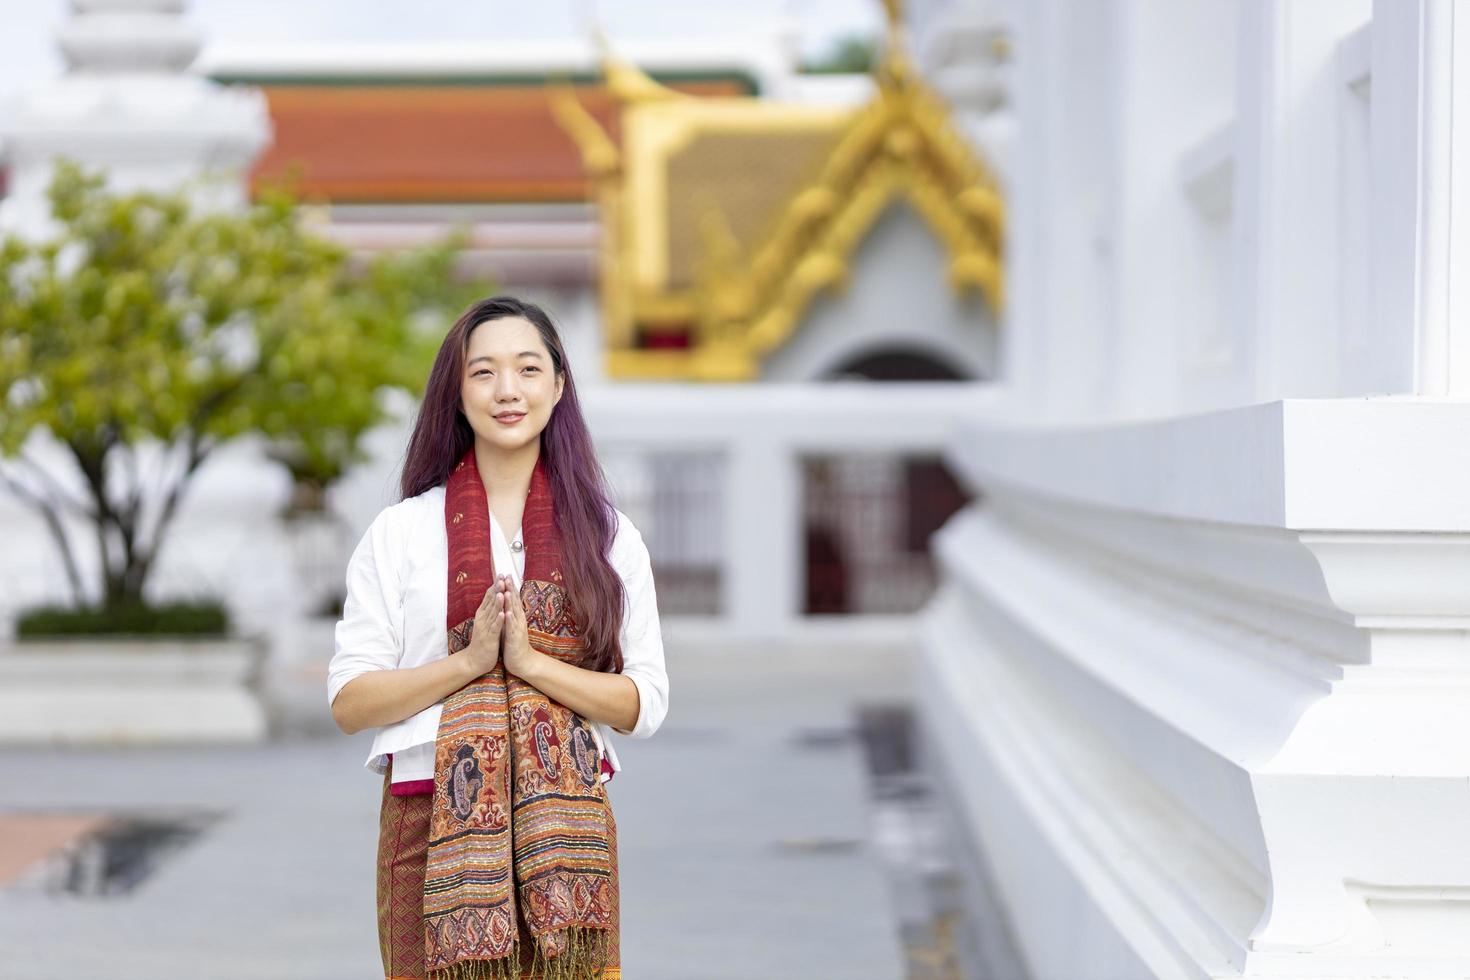 mujer asiática budista está haciendo meditación caminando alrededor del templo por la paz y el concepto de práctica de religión tranquila foto